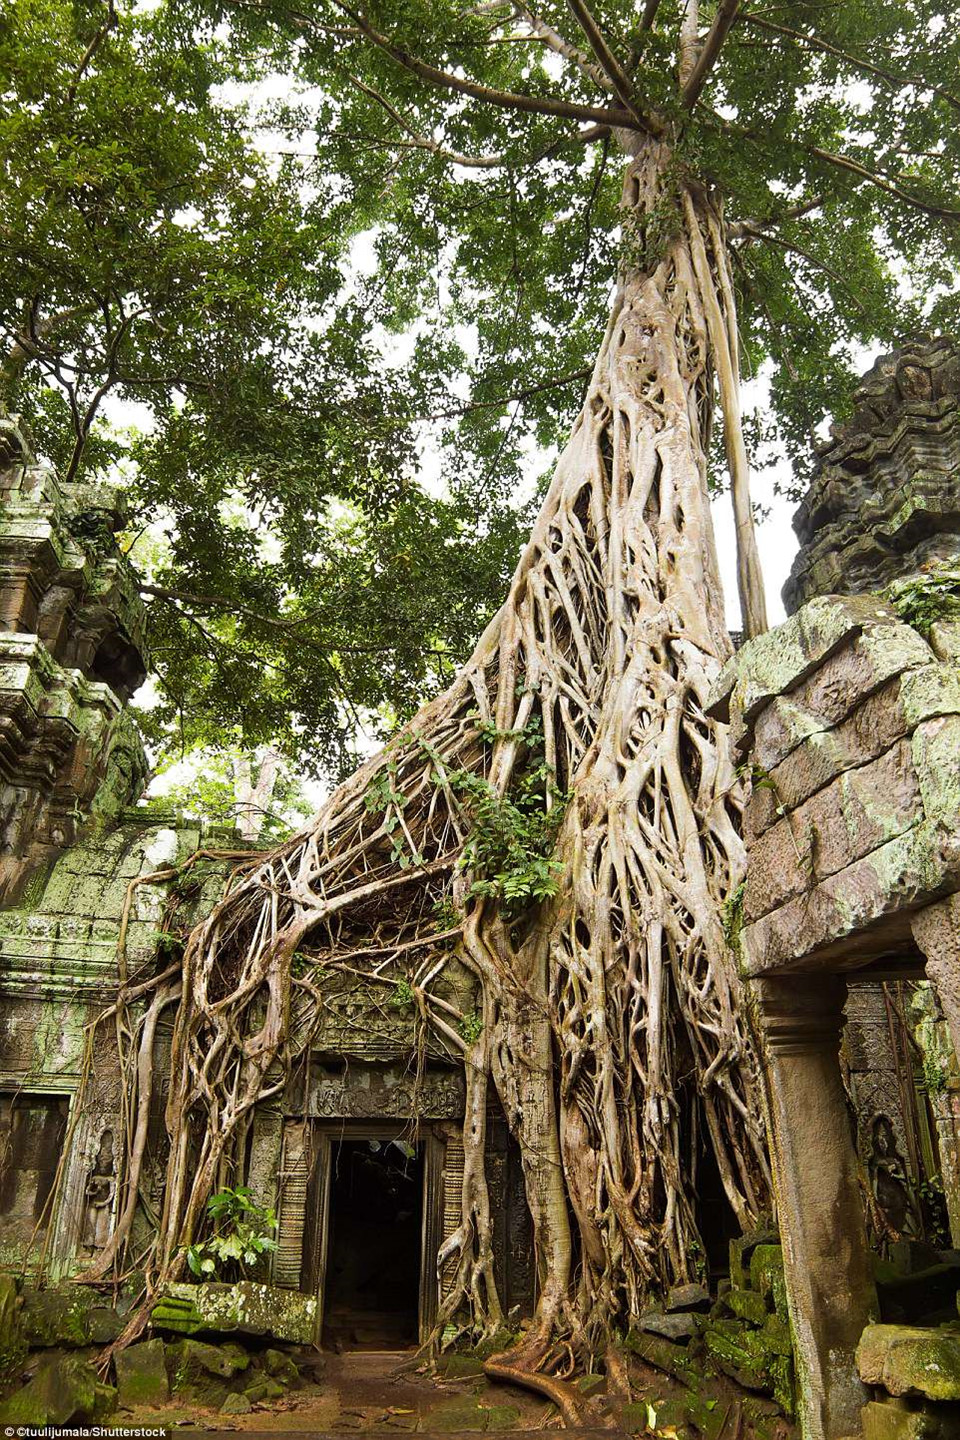 Một trong những lối vào ngôi đền Angkor Wat nổi tiếng nằm ở Siem Reap, Campuchia, có chiều dài hơn 800 m và được bao quanh bởi một hào nước.